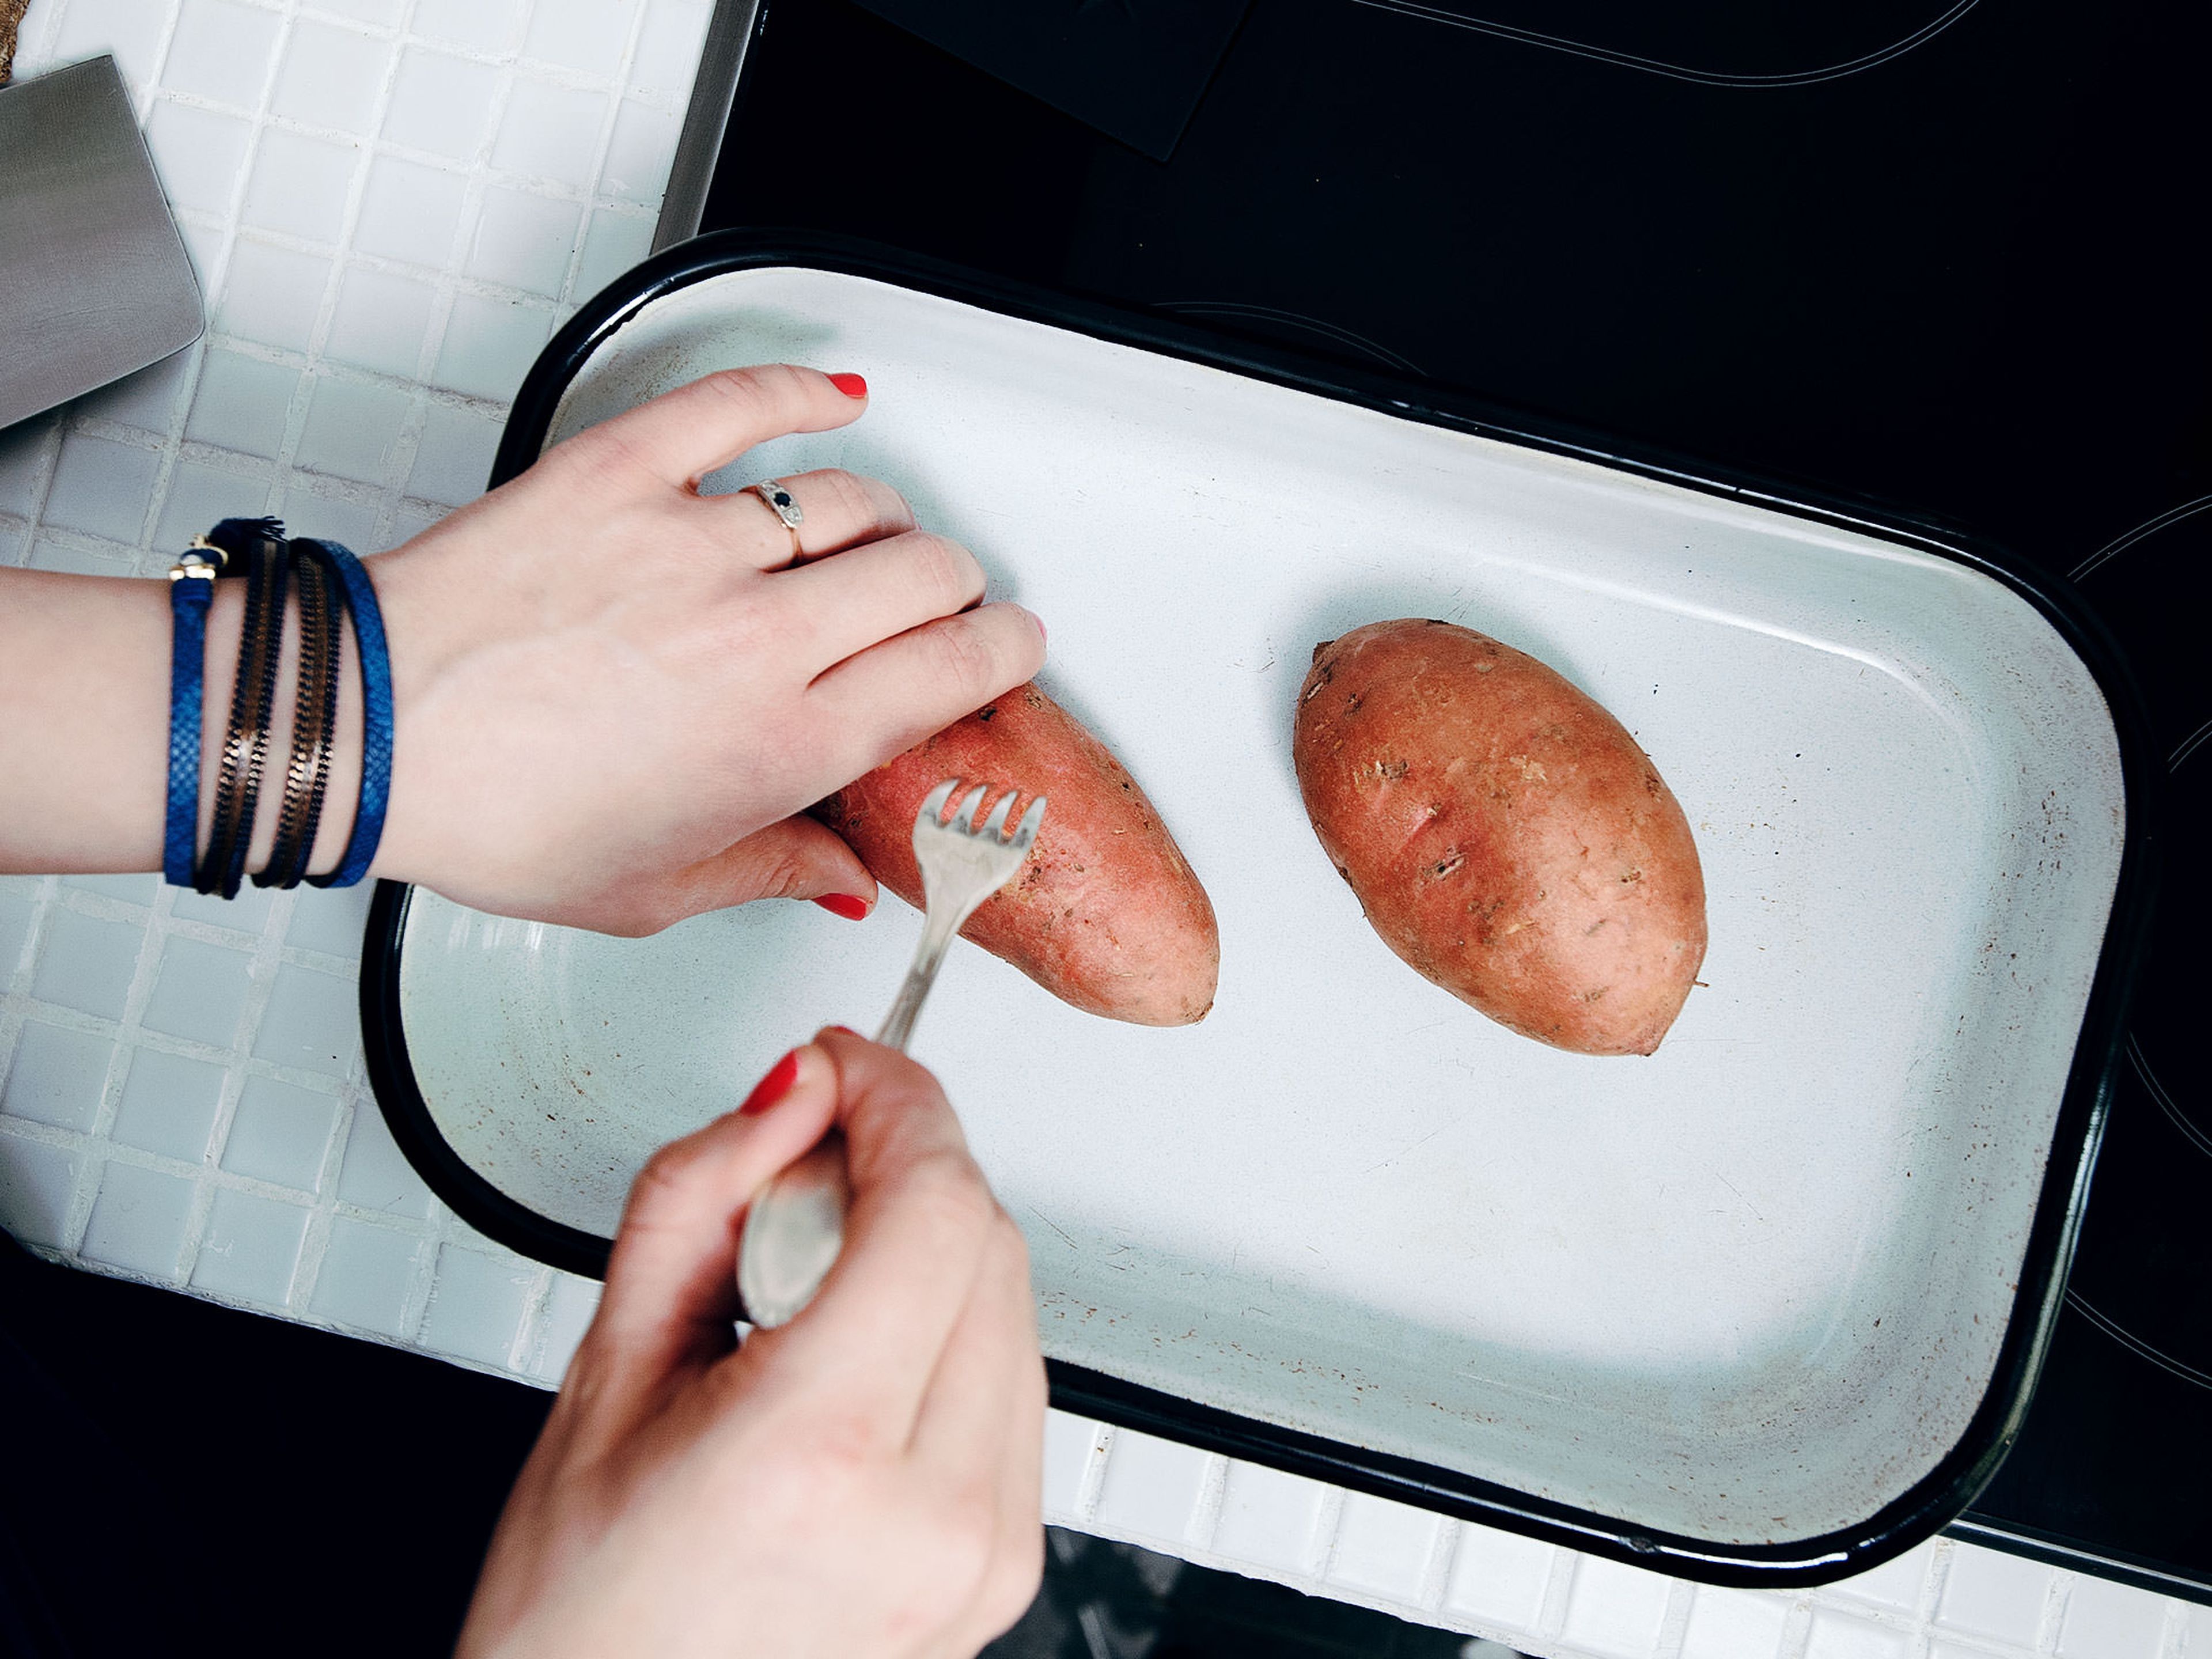 Backofen auf 200°C vorheizen. Süßkartoffeln auf ein Blackblech legen und ca. achtmal mit einer Gabel einstechen. Im Backofen ca. 35 Min. backen.